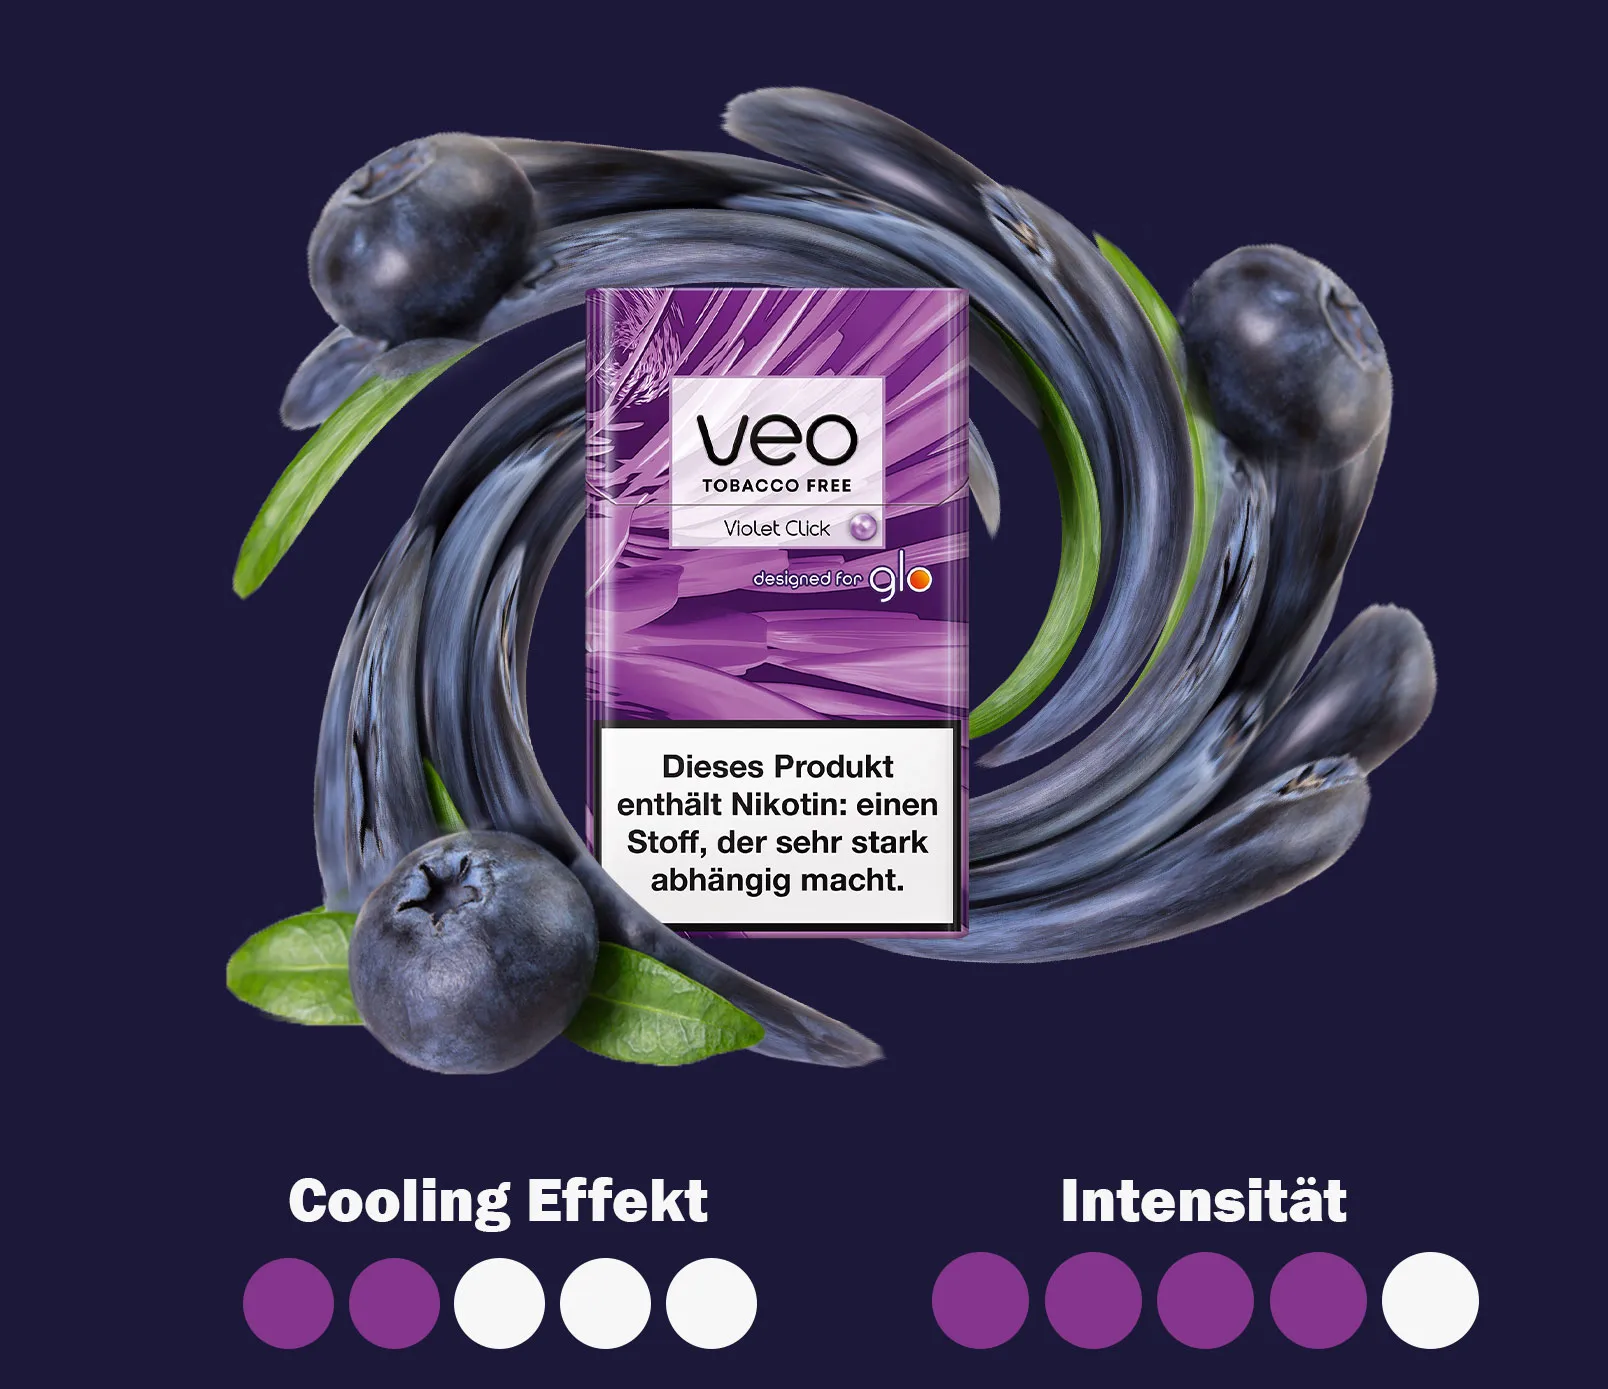 Eine Intensitaetsuebersicht zu den Veo sticks Violet Click